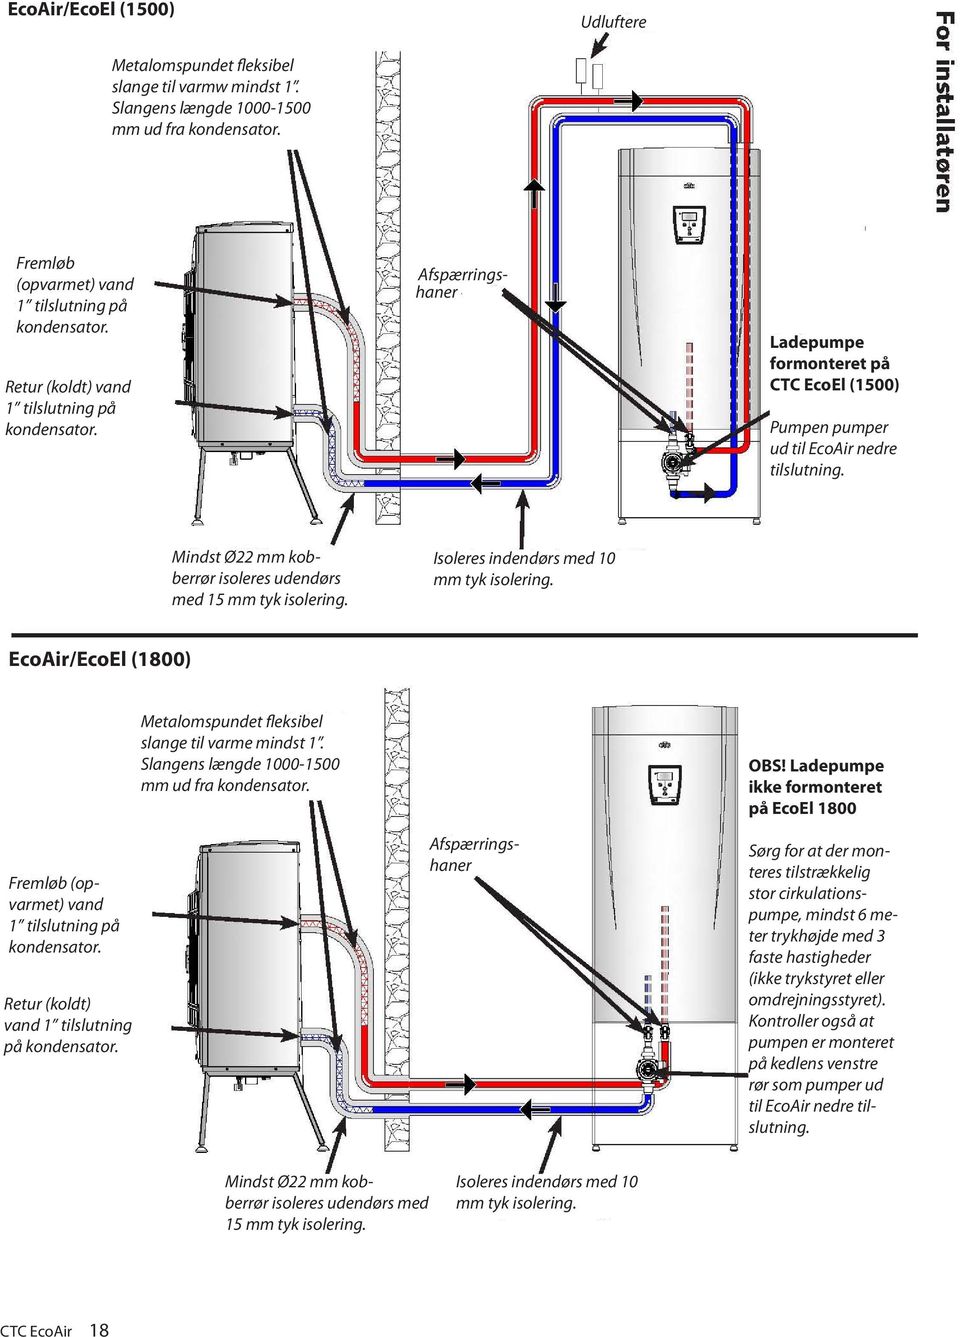 Mindst Ø22 mm kobberrør isoleres udendørs med 15 mm tyk isolering. Isoleres indendørs med 10 mm tyk isolering. EcoAir/EcoEl (1800) Fremløb (opvarmet) vand 1 tilslutning på kondensator.